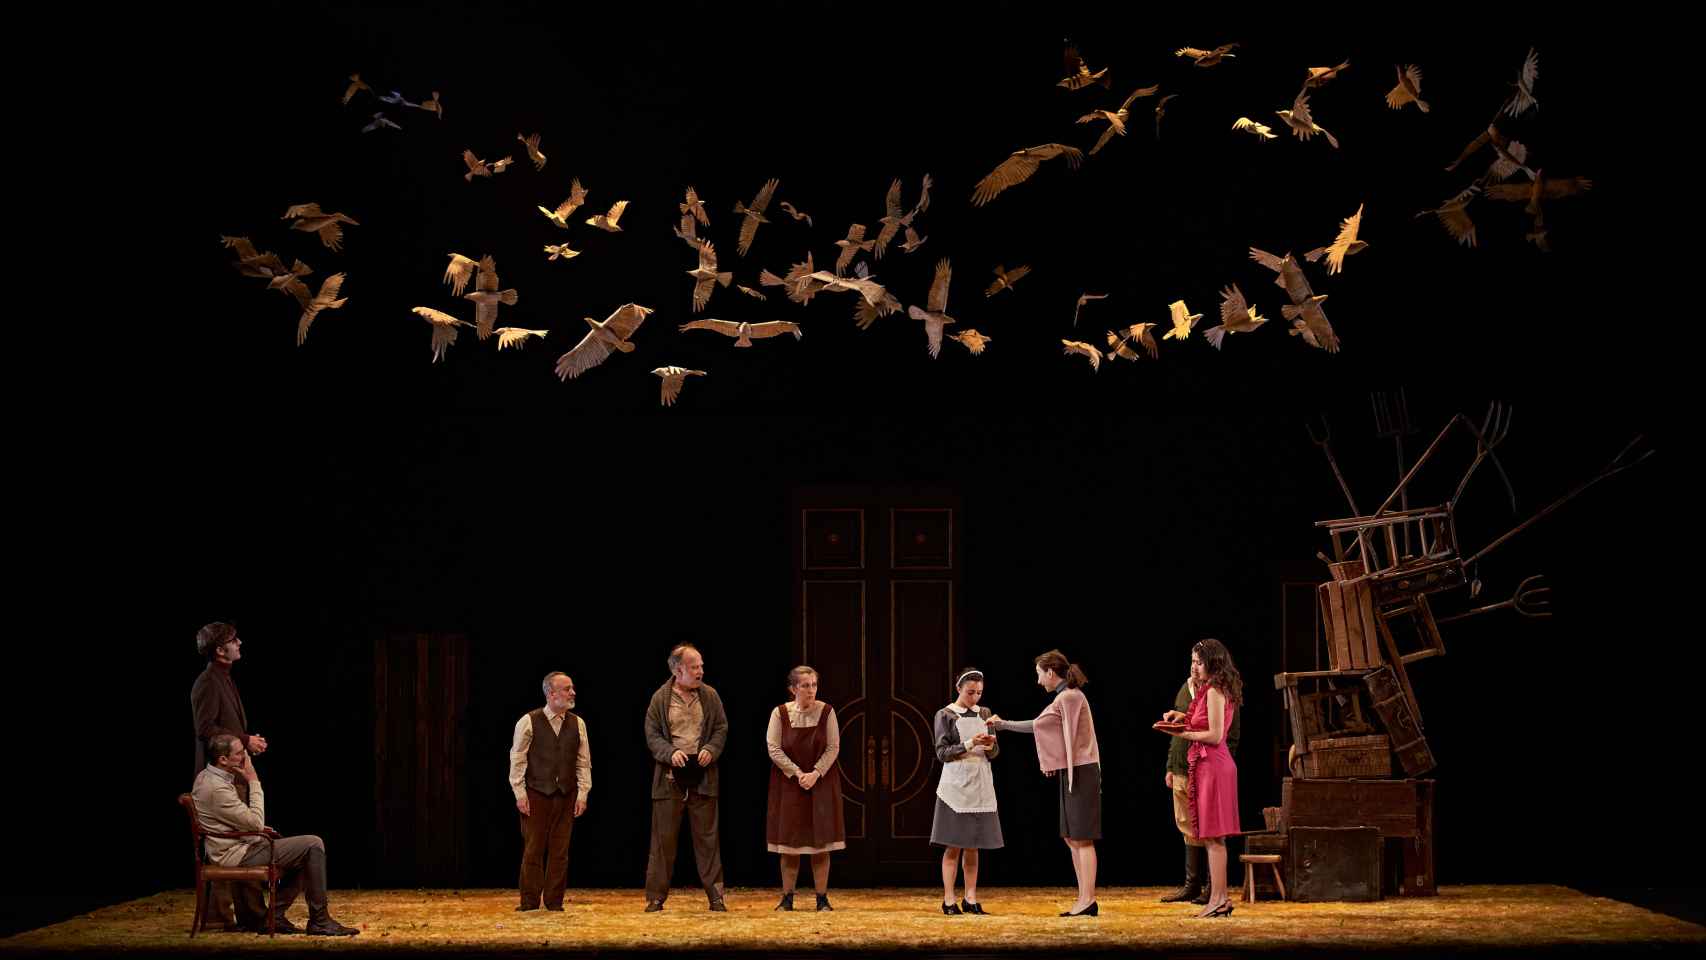 La escenografía incluye una columna de enseres que simboliza la pobreza de la familia protagonista y una instalación de palomas que refleja su vínculo con la naturaleza. Foto: MarcosGpunto